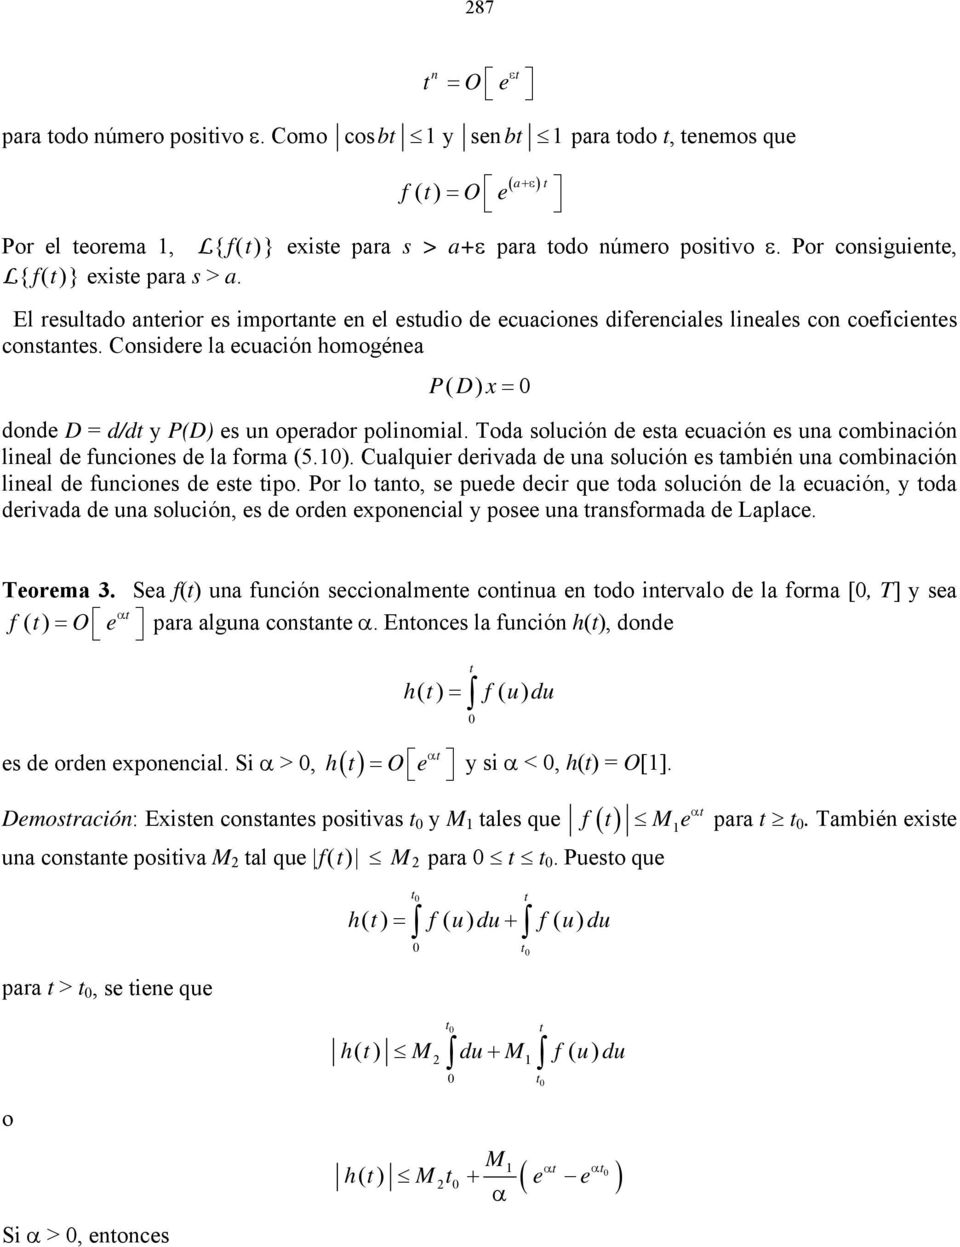 Toda olución de ea ecuación e una combinación lineal de funcione de la forma (5.). Cualquier derivada de una olución e ambién una combinación lineal de funcione de ee ipo.